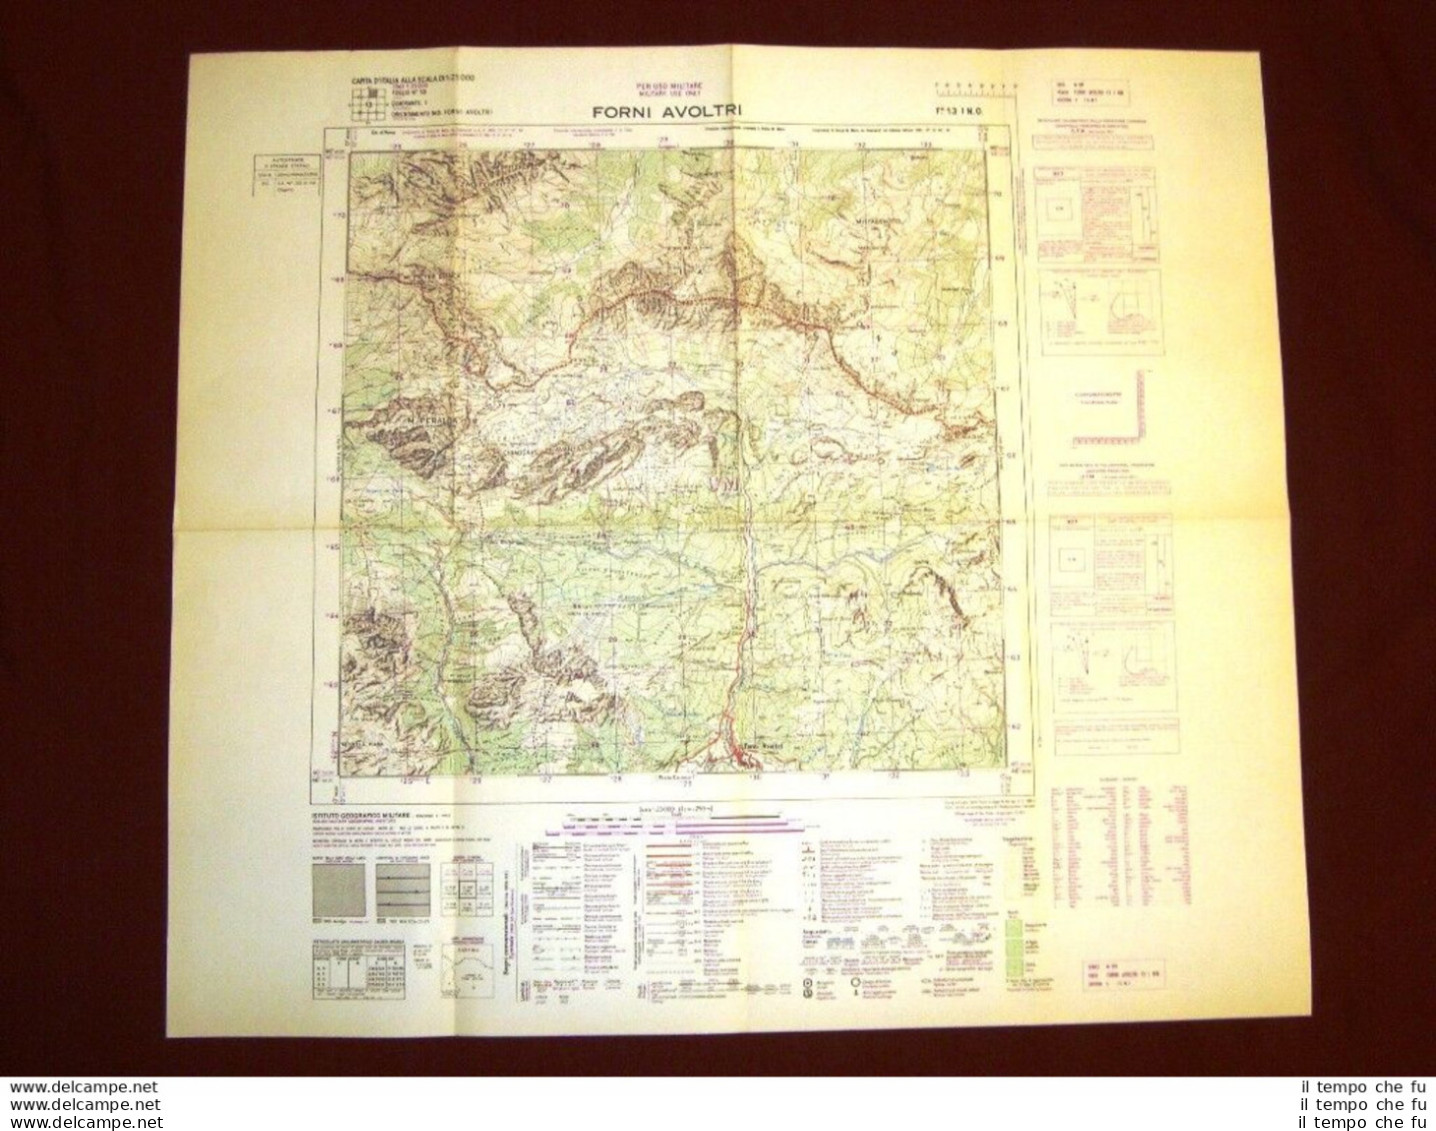 Grande Carta Topografica Forni Avoltri Udine Friuli Dettagliatissima I.G.M. - Geographical Maps